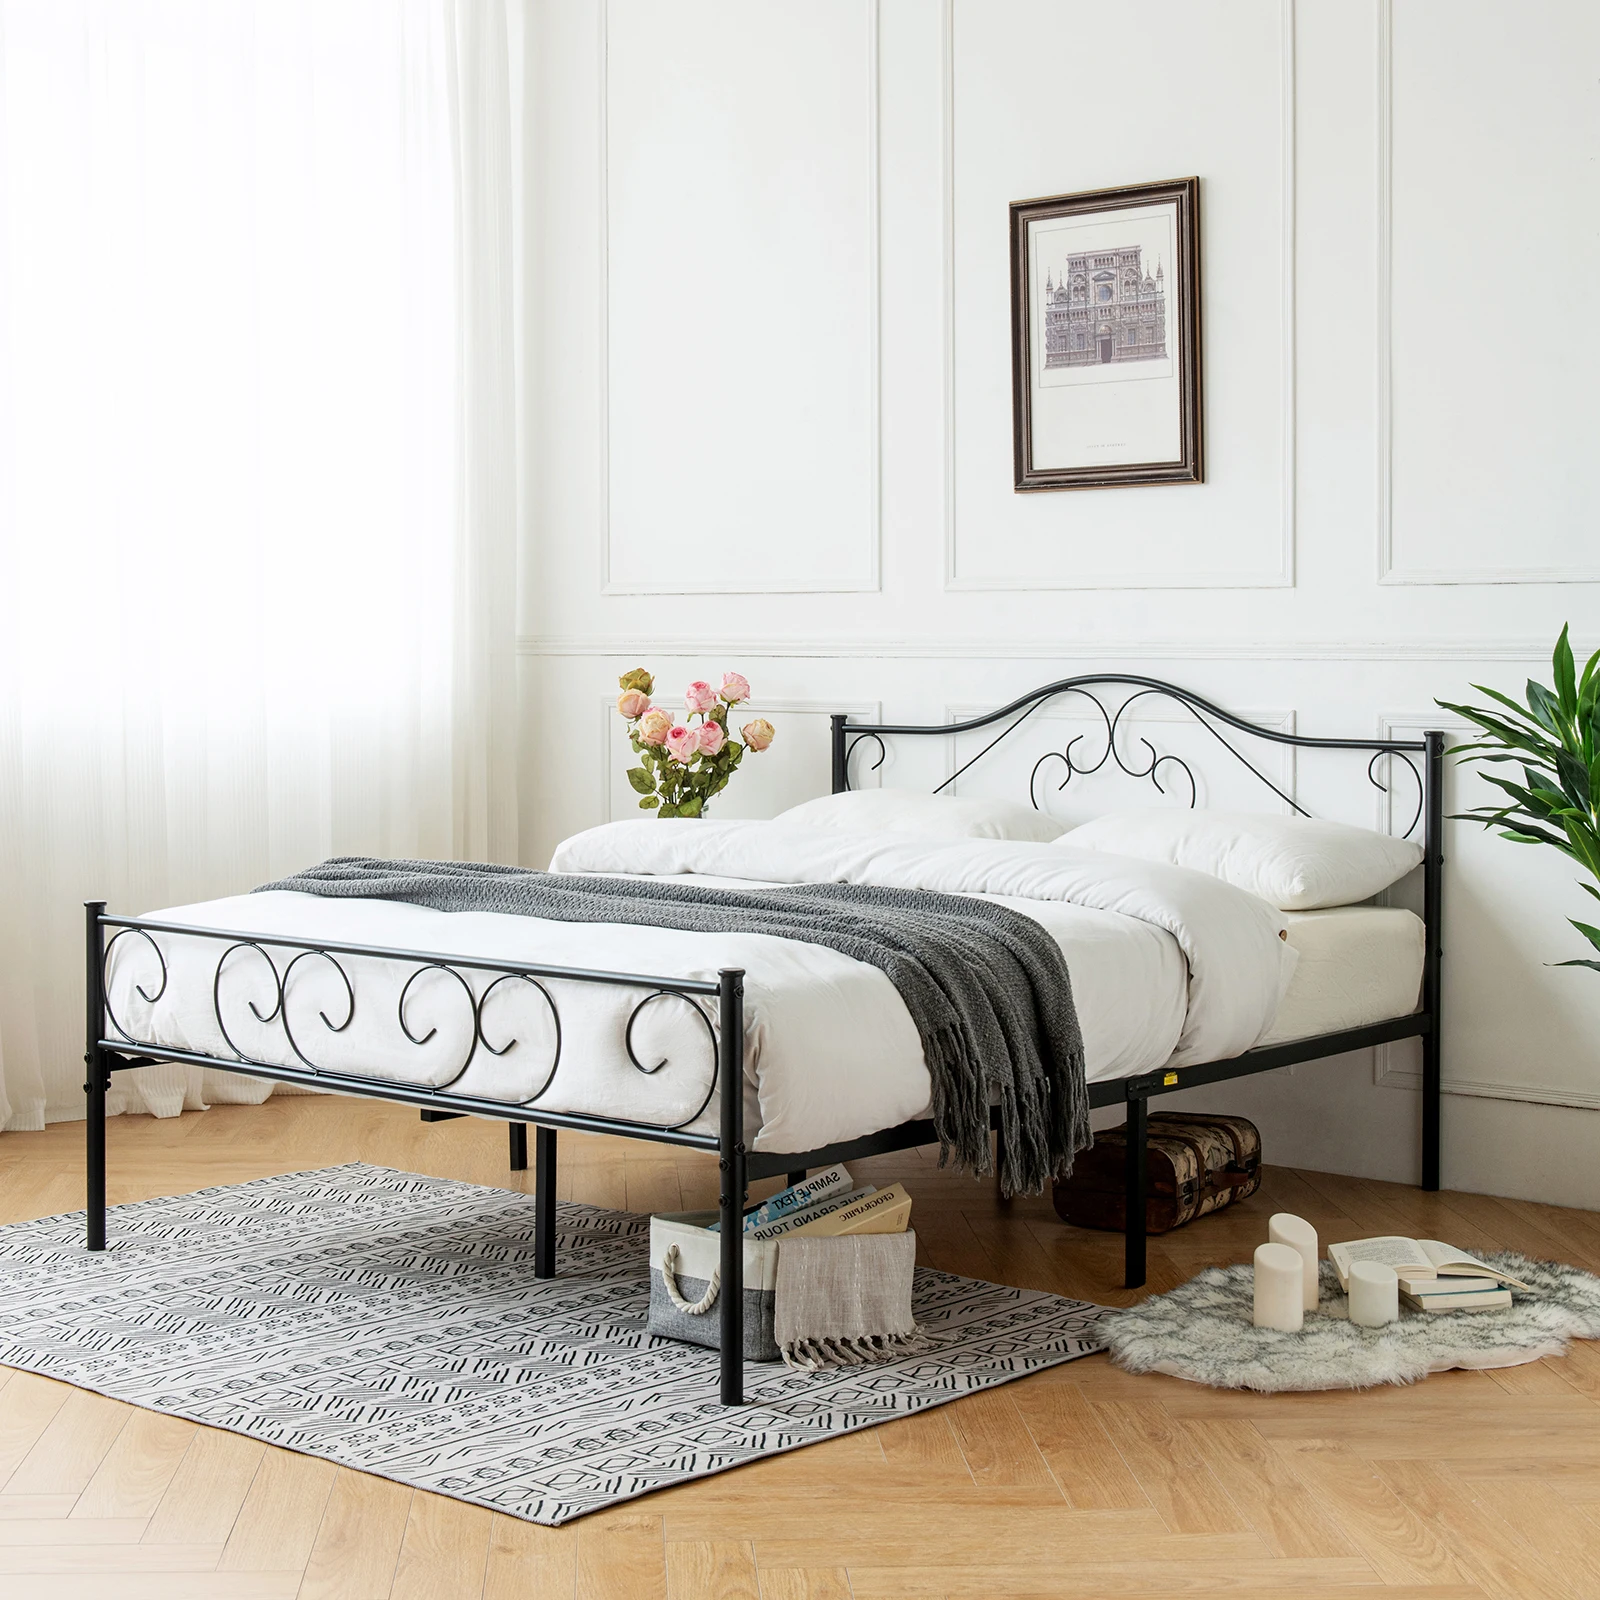 

Рама для двуспальной кровати с изголовьем кровати сверхпрочная металлическая платформа кровати прочные бесшумные кровати с стальными рейками матрас основа черная